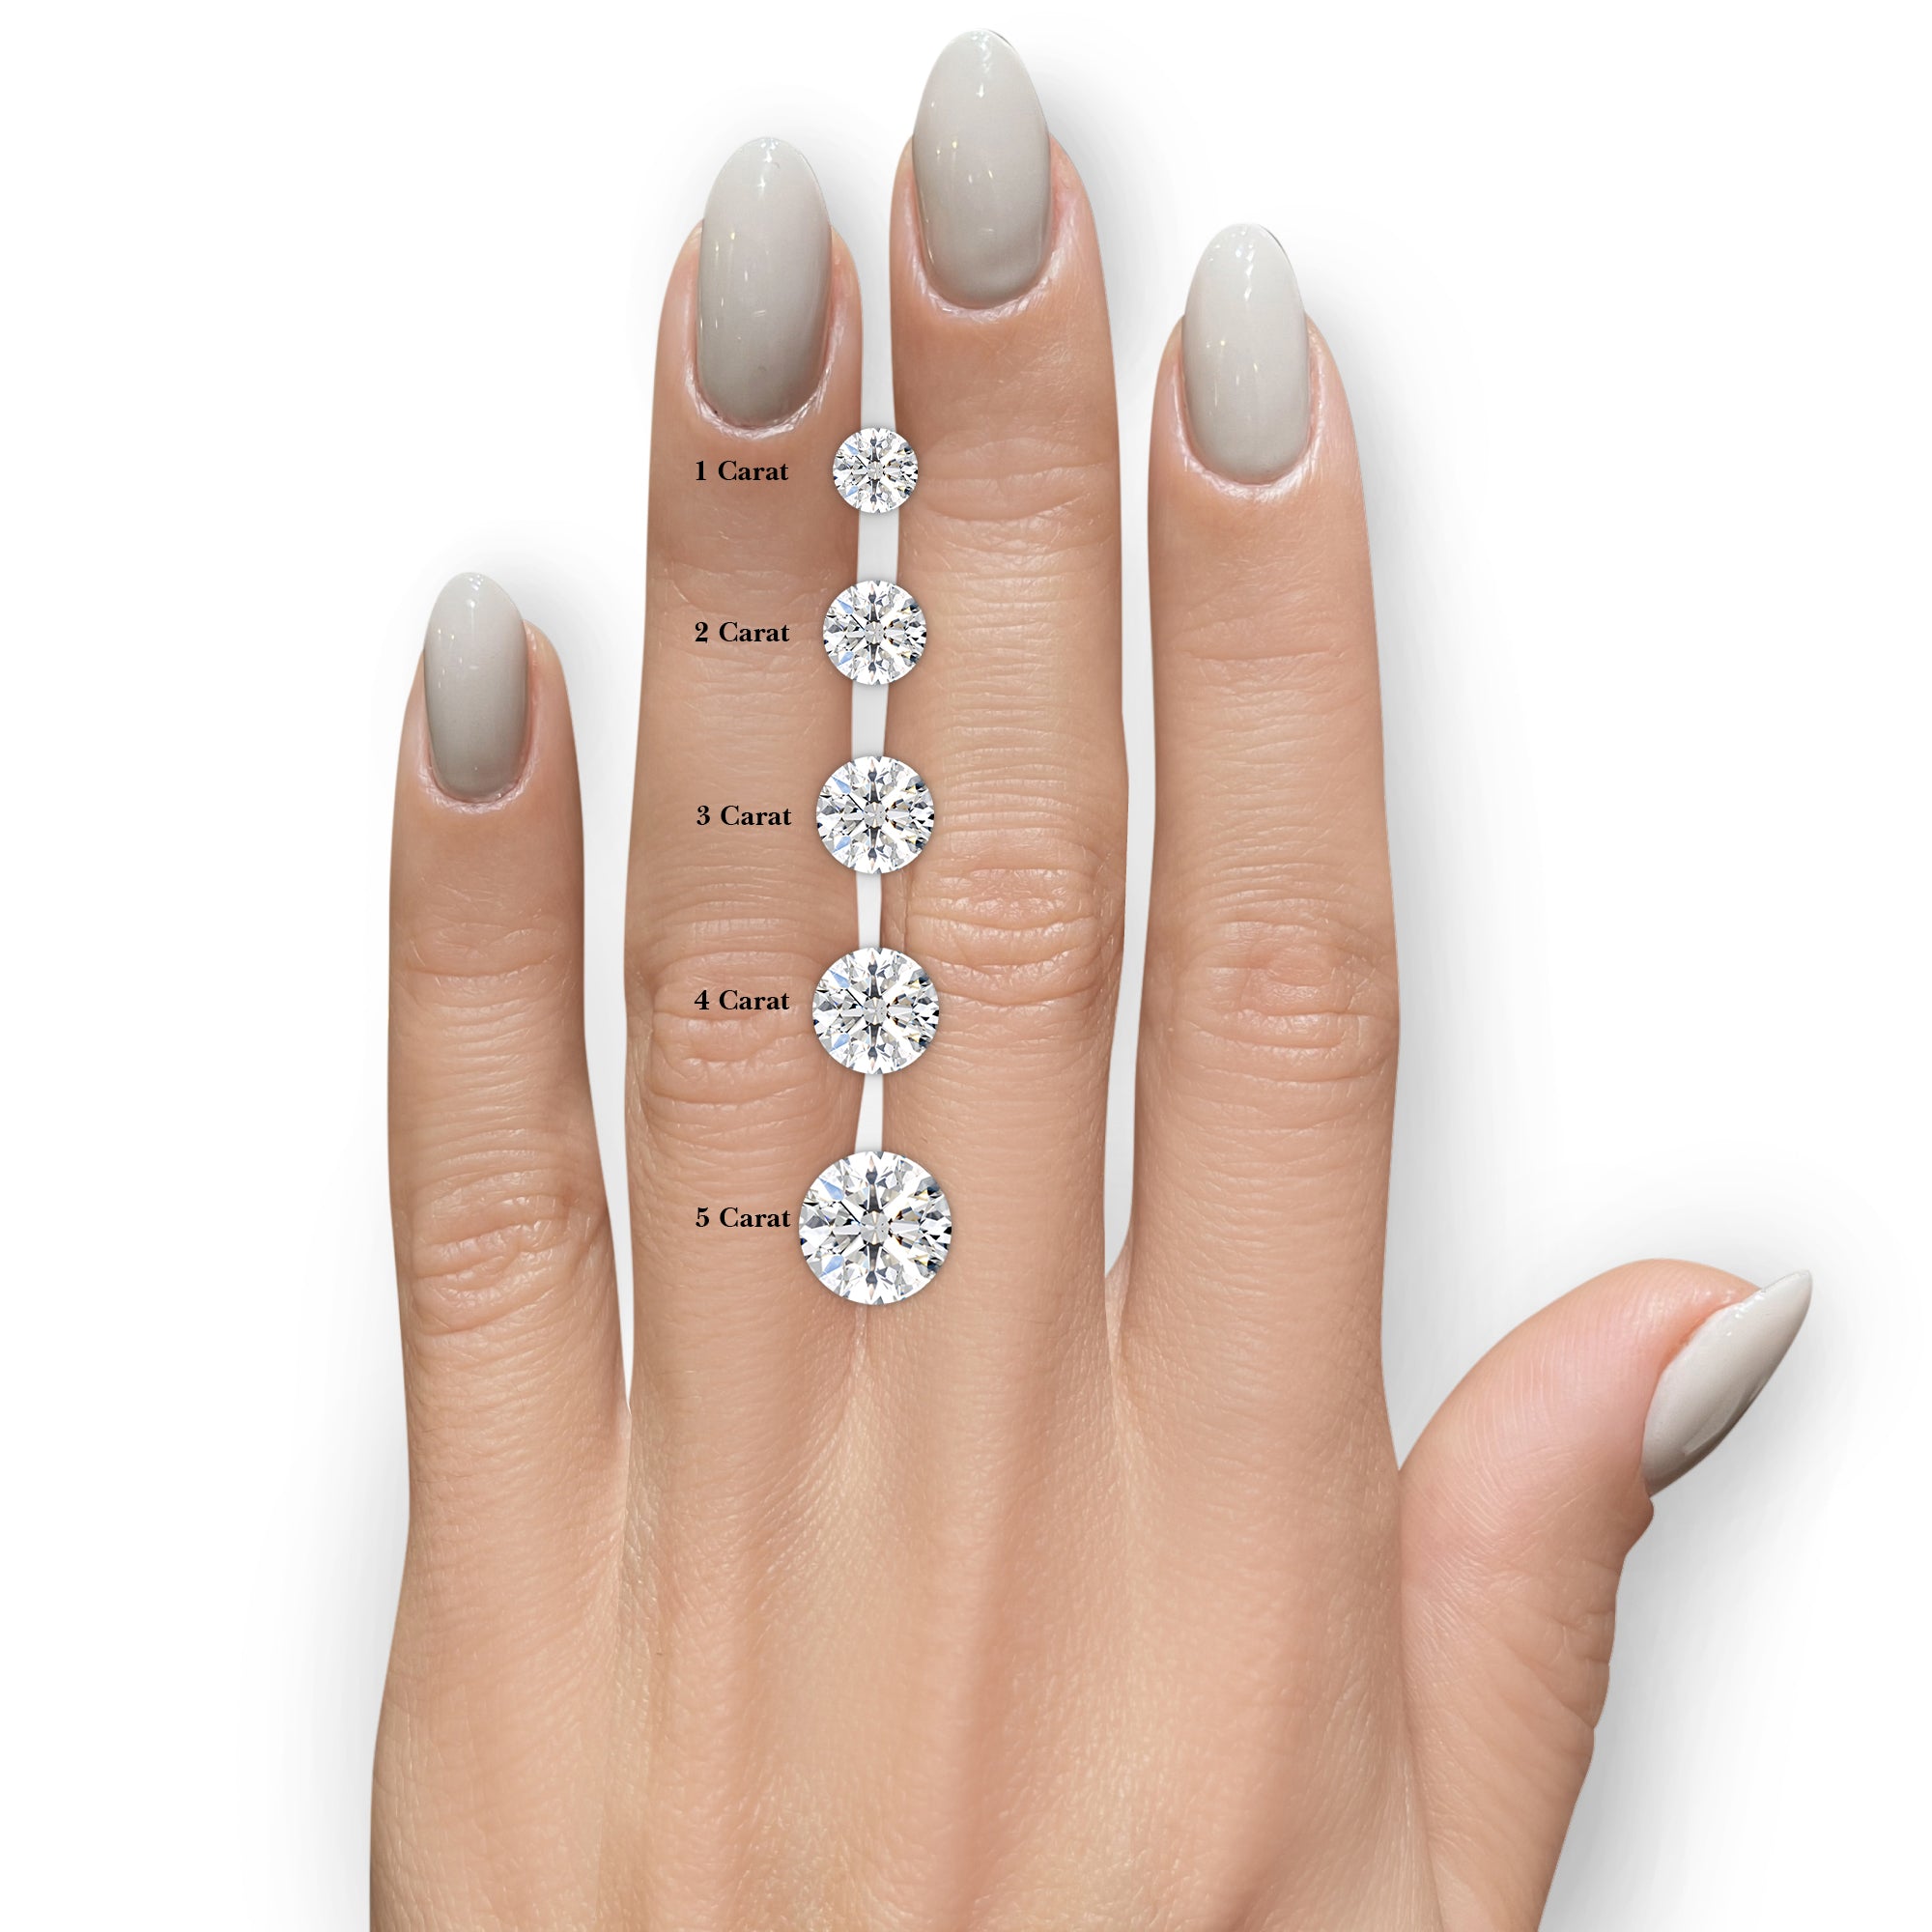 Veronica Diamond Engagement Ring   (2 Carat) -Platinum